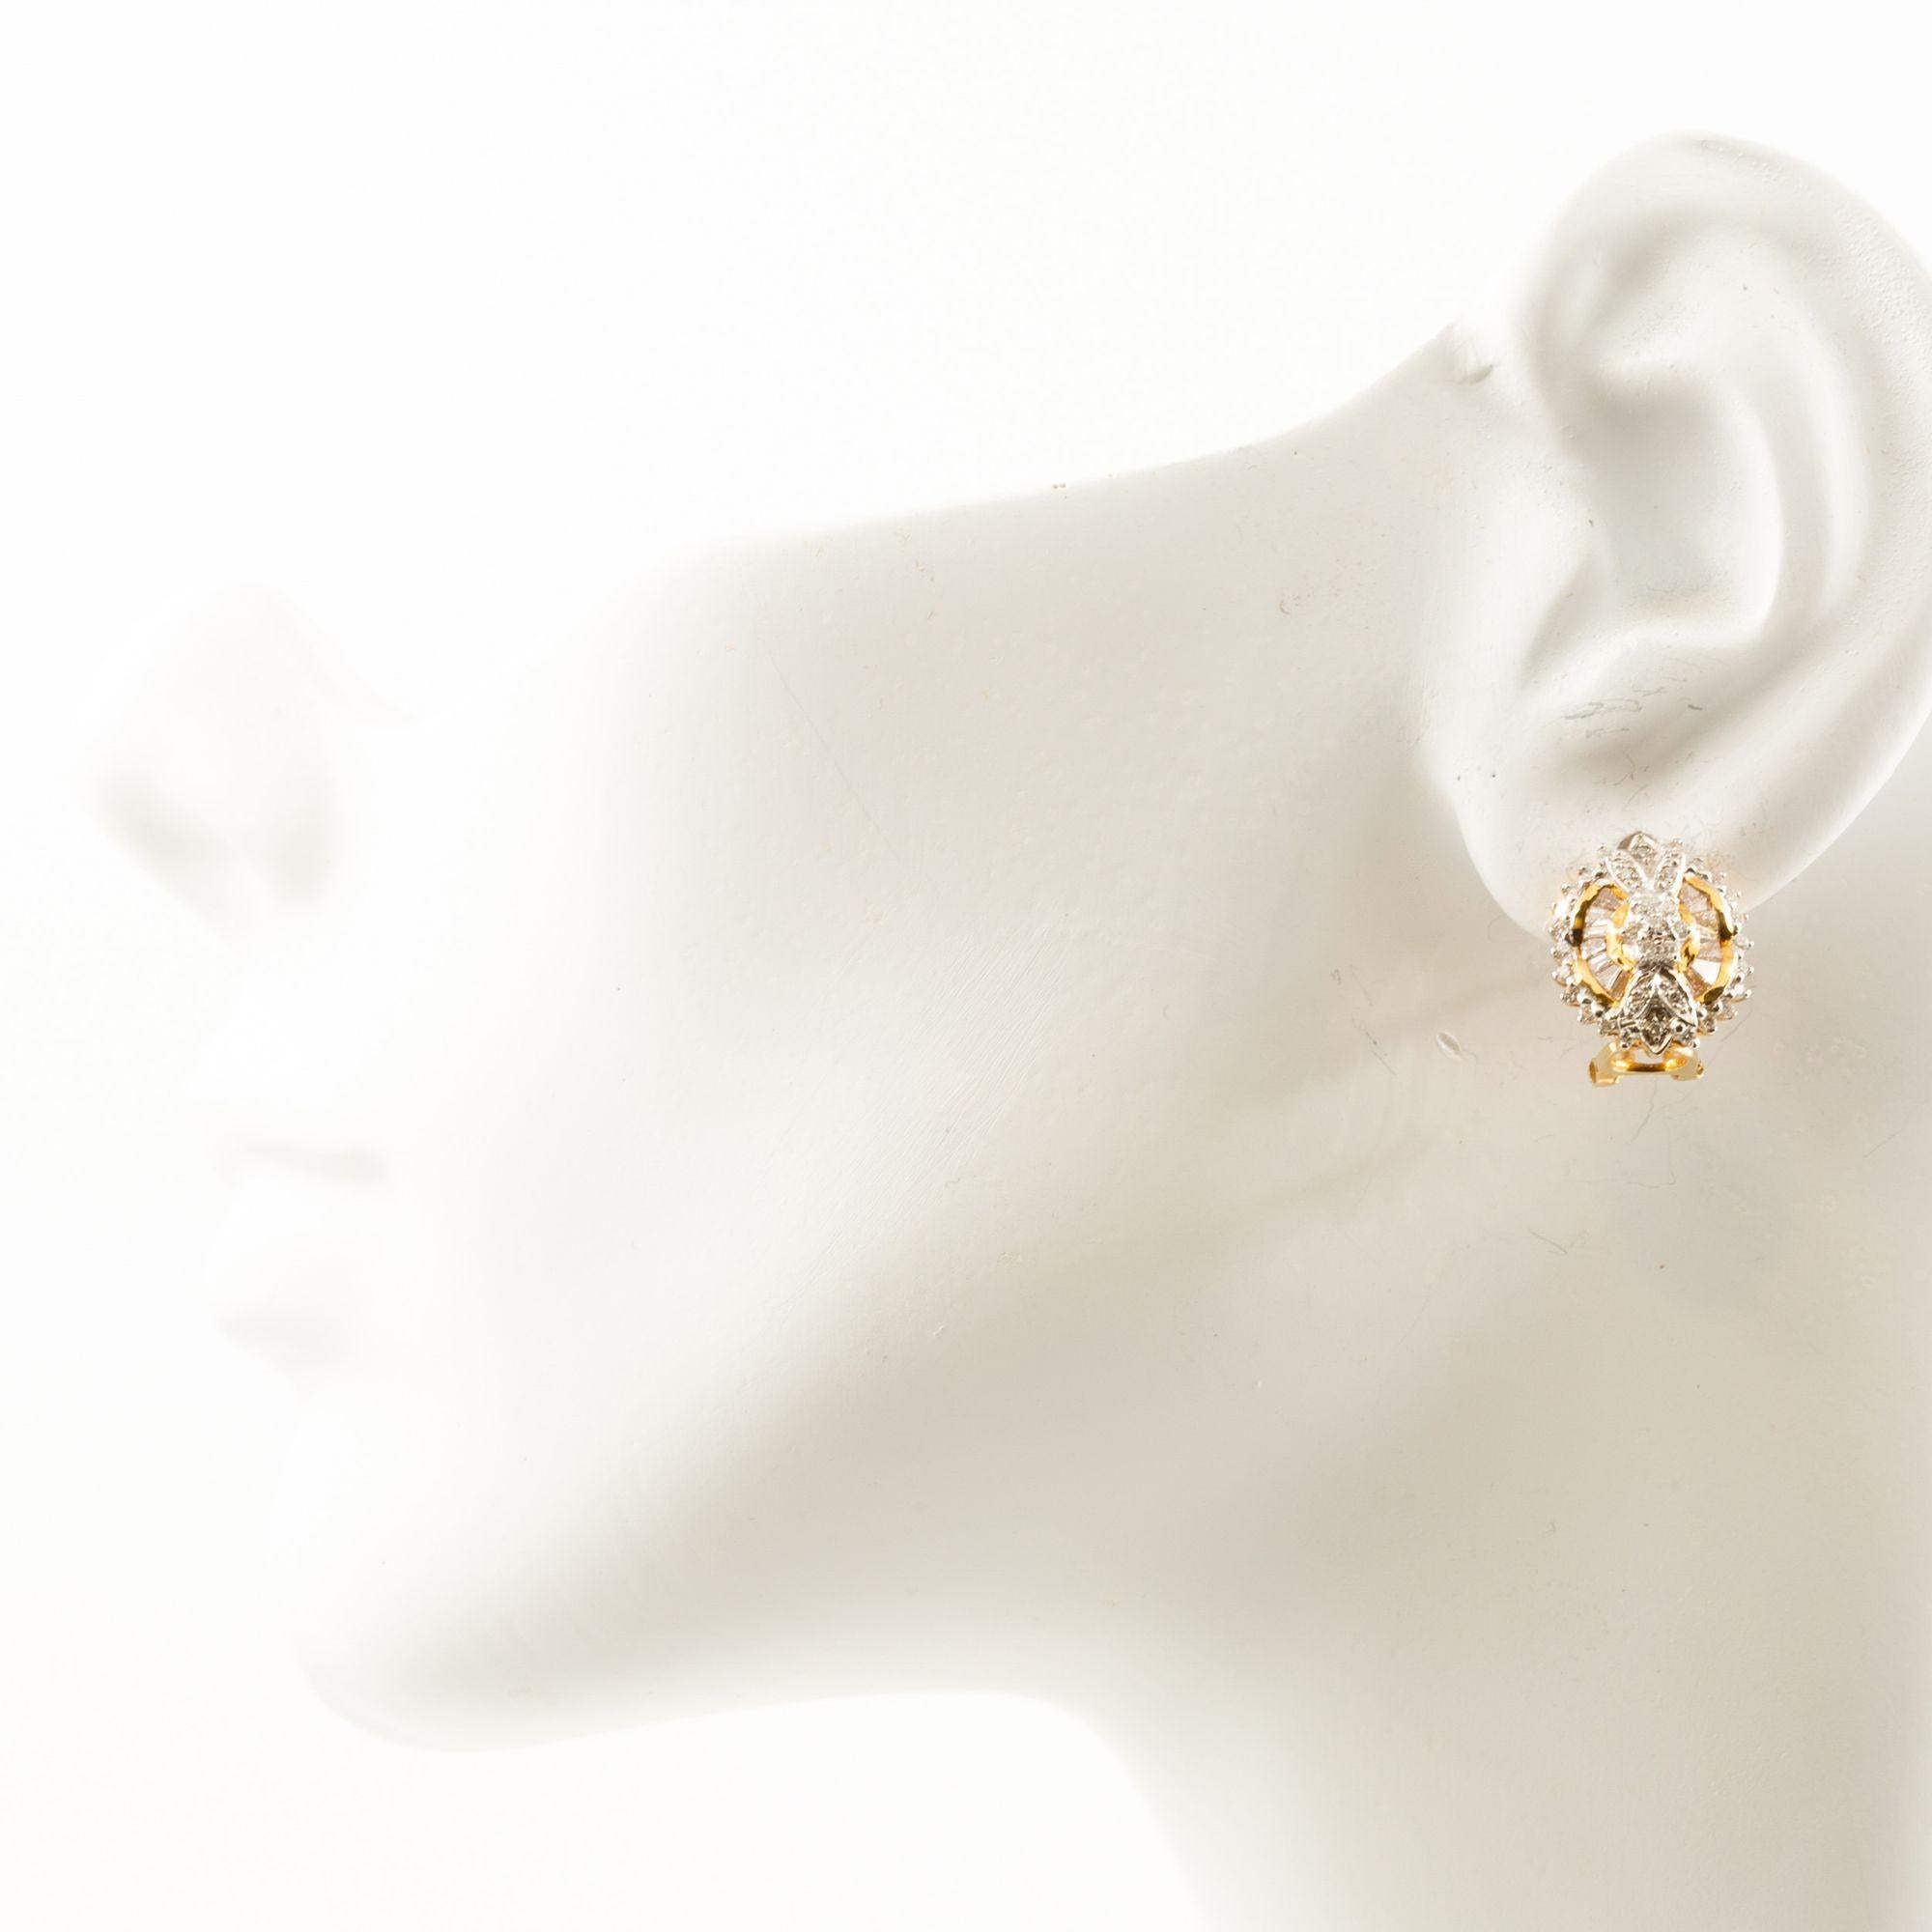 Paar 14K Gelbgold & Edelsteinkreis-Ohrringe
Artikel # C104612

Ein wunderschönes Paar Ohrringe aus 14-karätigem Gelbgold mit Omega-Clipverschluss. Das Design der Ohrringe besteht aus einer Kombination von Edelsteinen und Elementen aus Gelbgold, die